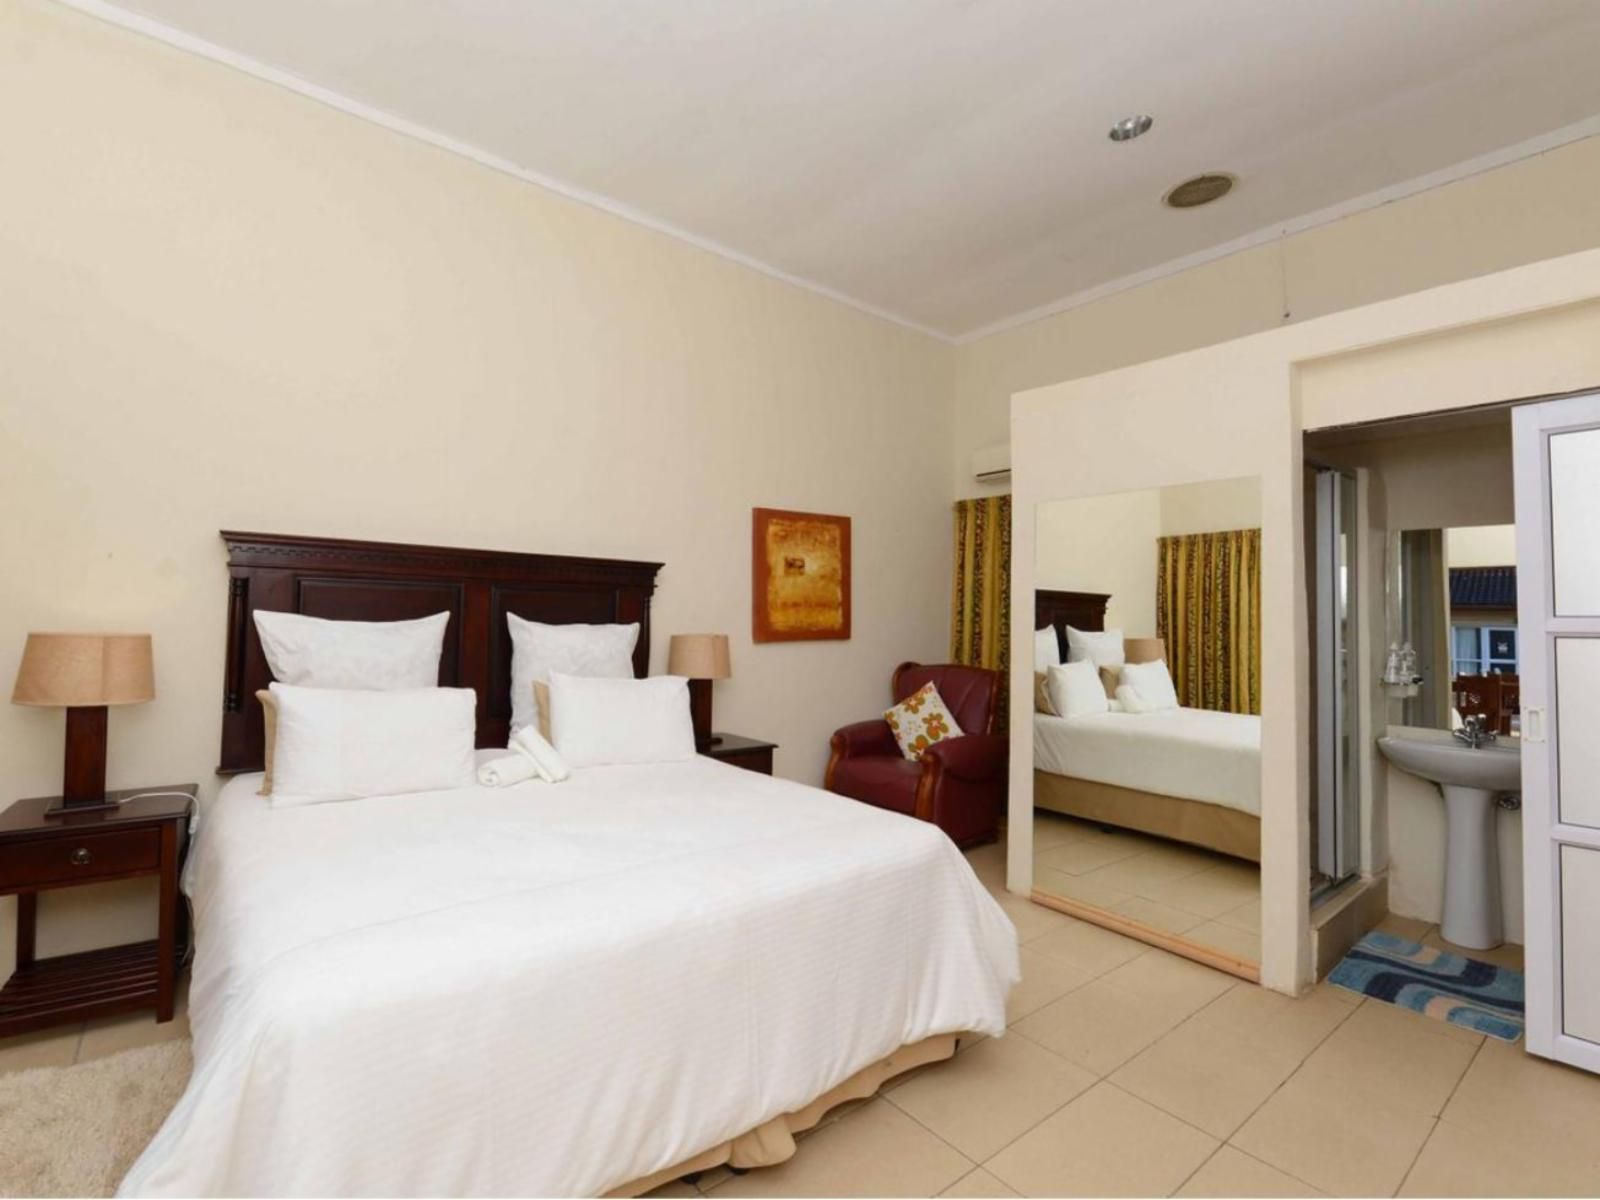 Ihawu Guest House Westville Durban Kwazulu Natal South Africa Bedroom